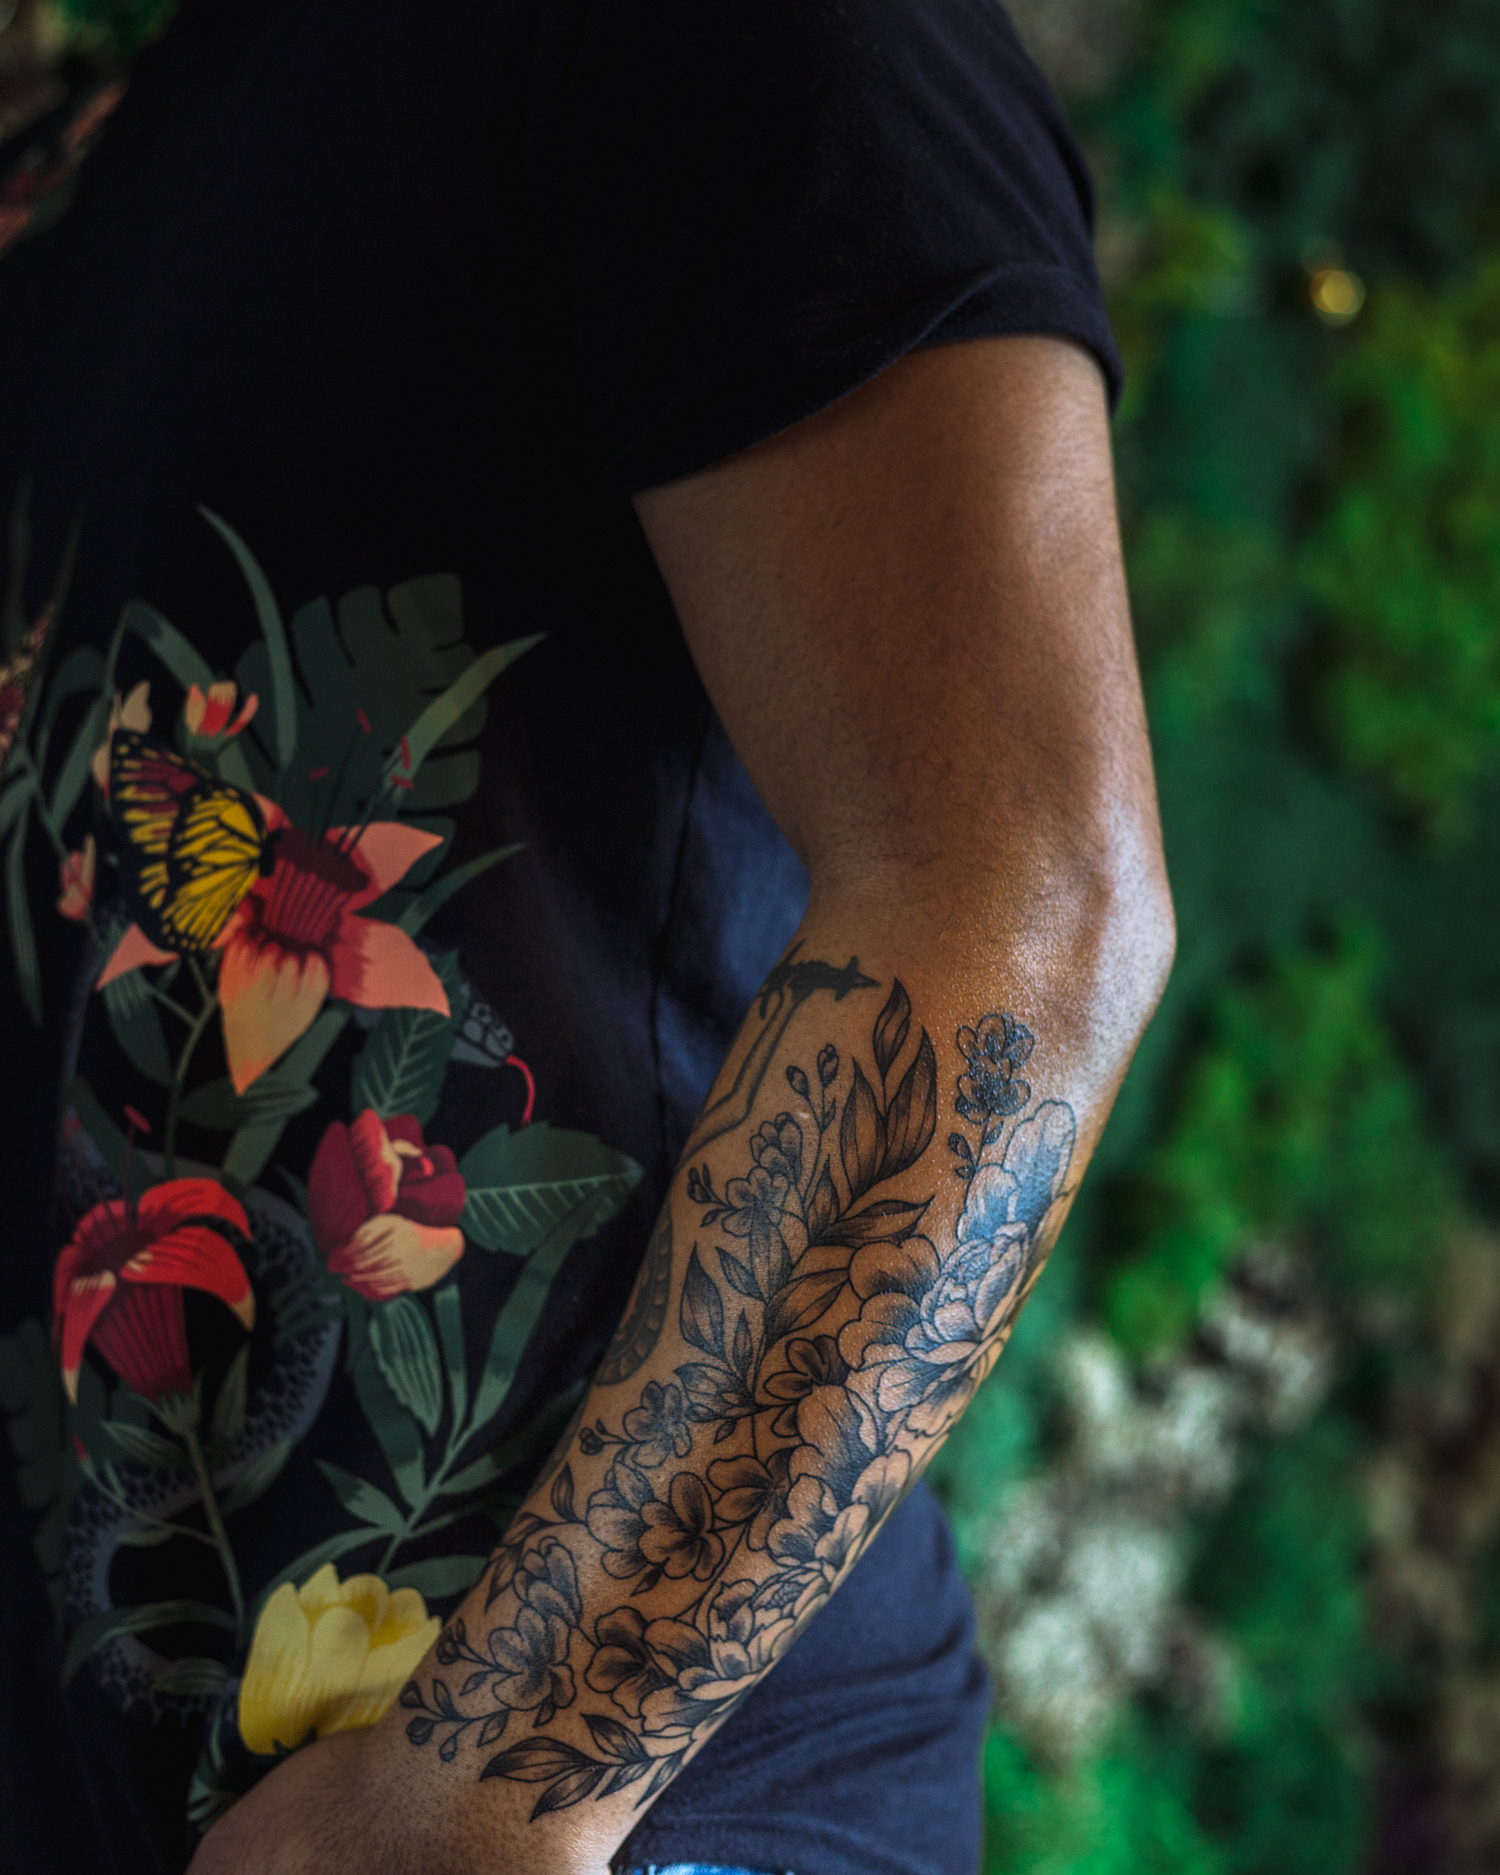 Dan Mall’ new tattoo